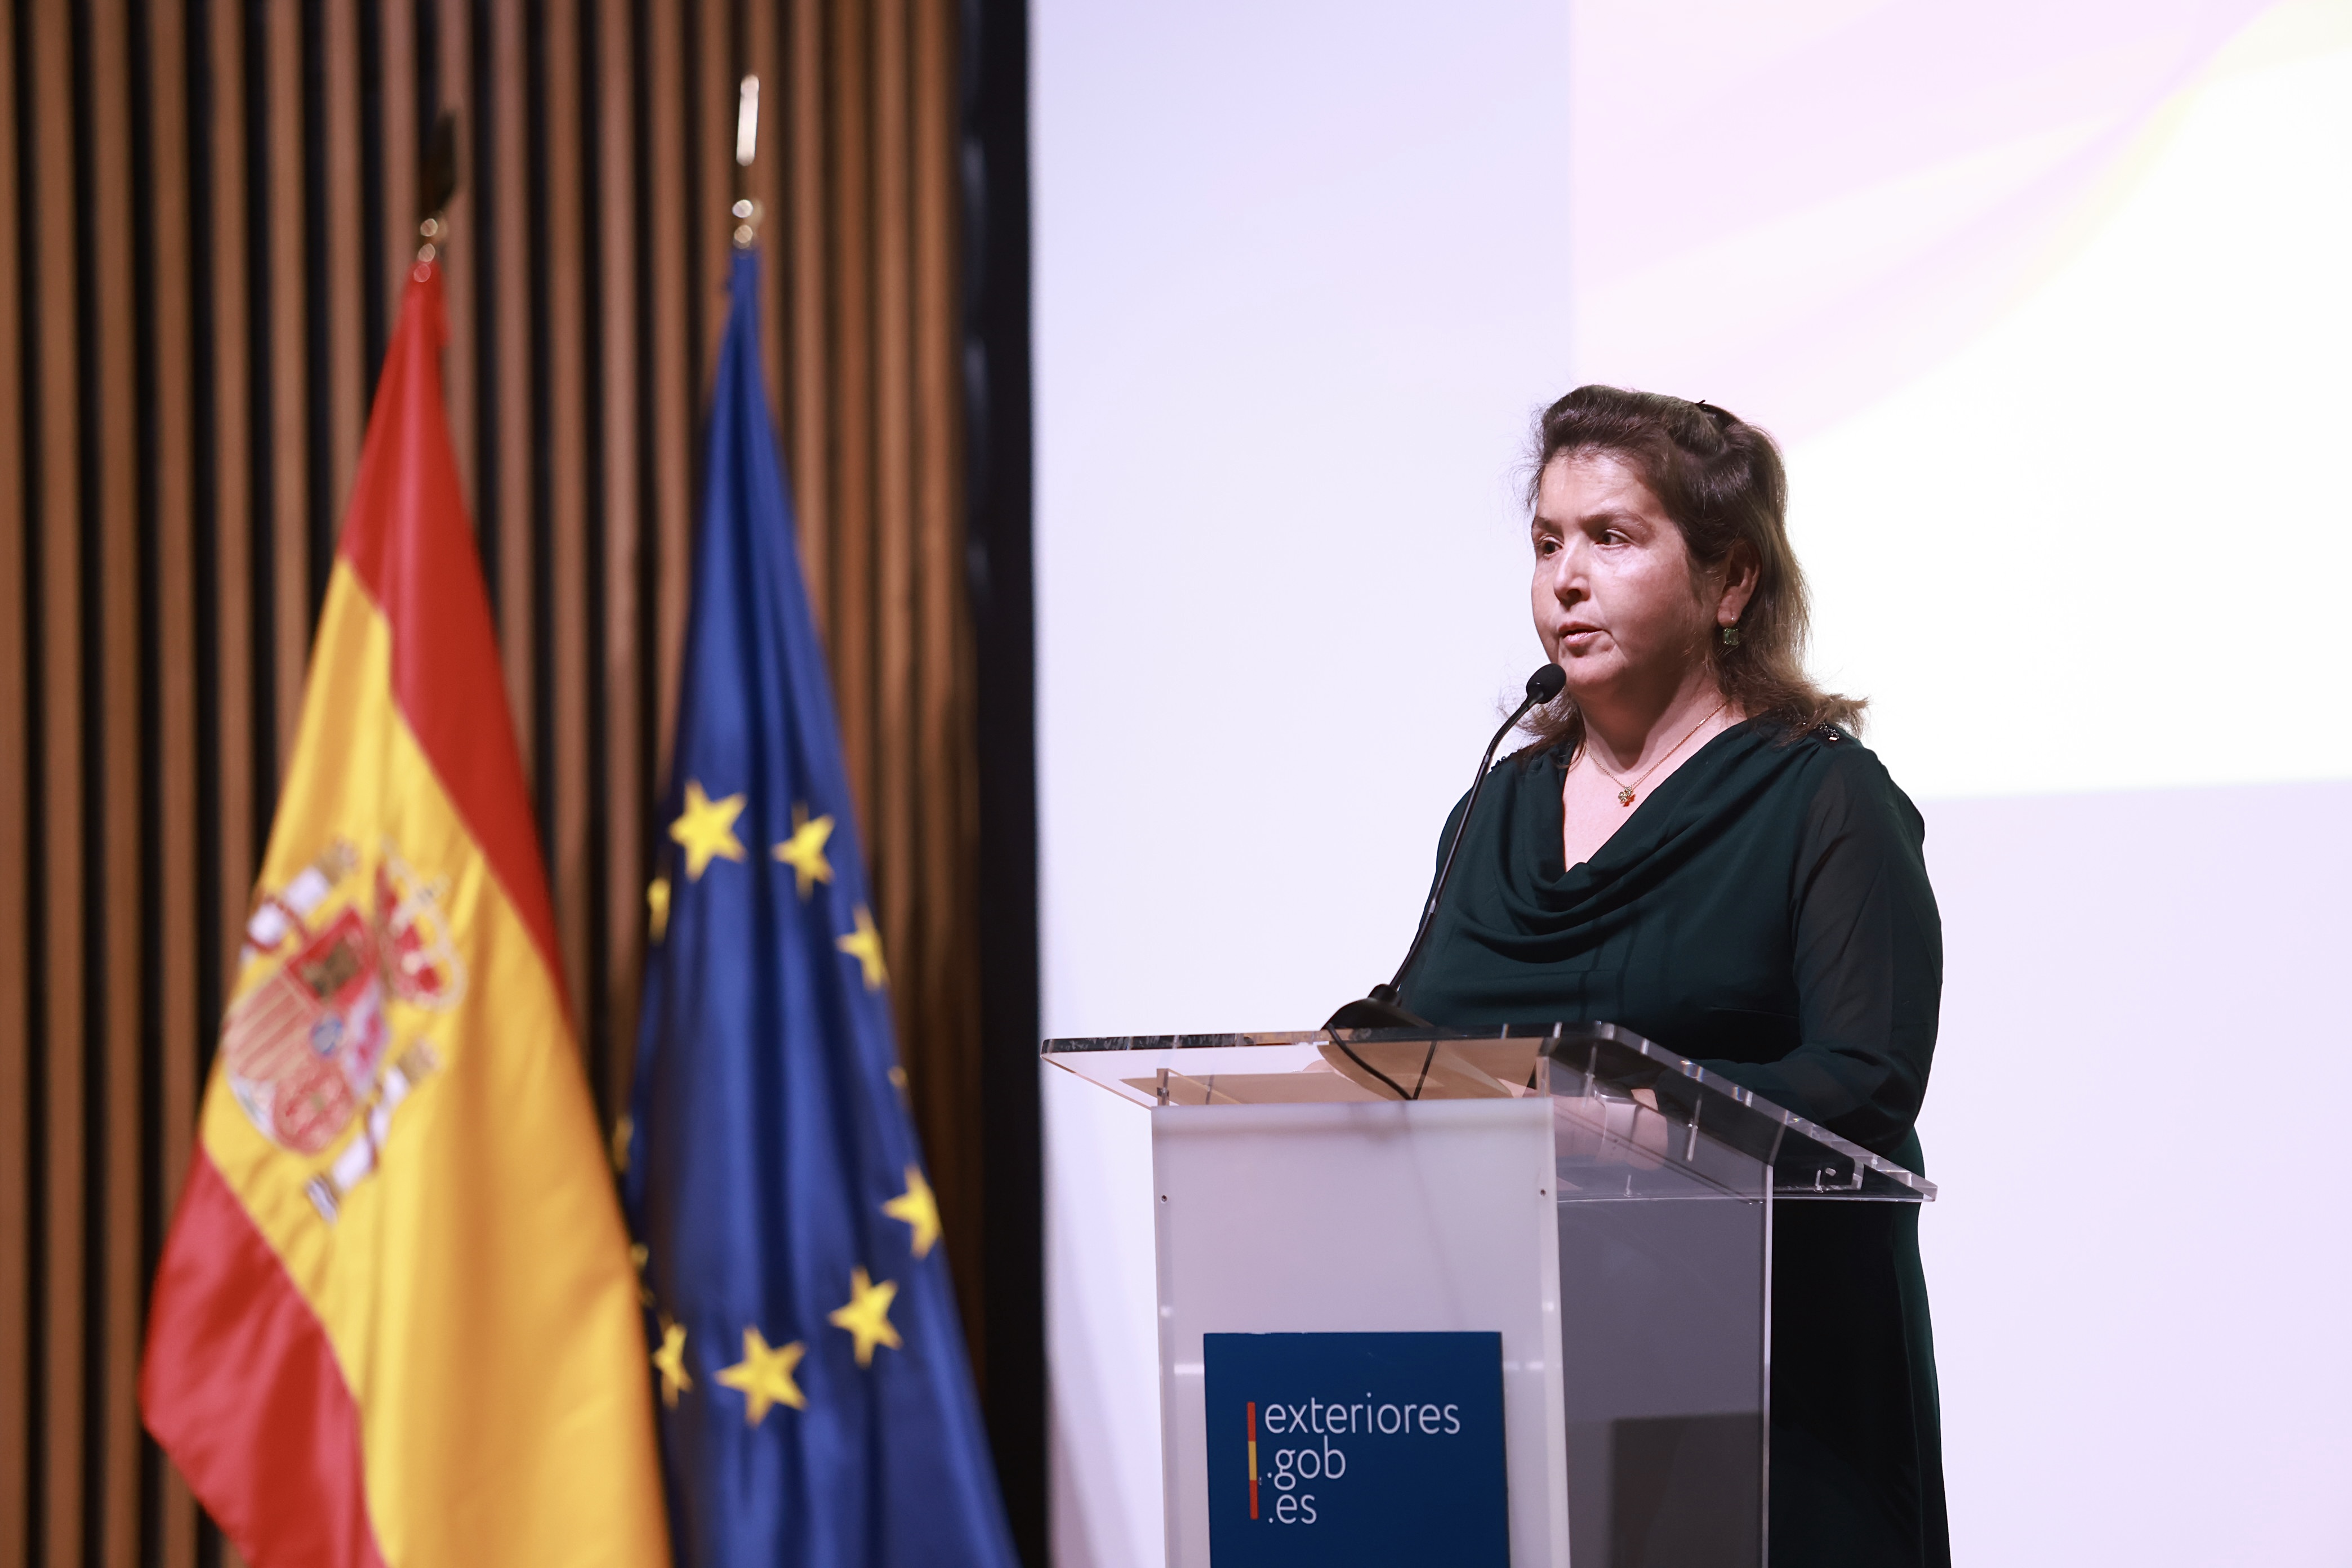 Bárbara Palau en el atril con bandera española y europea a su lado.